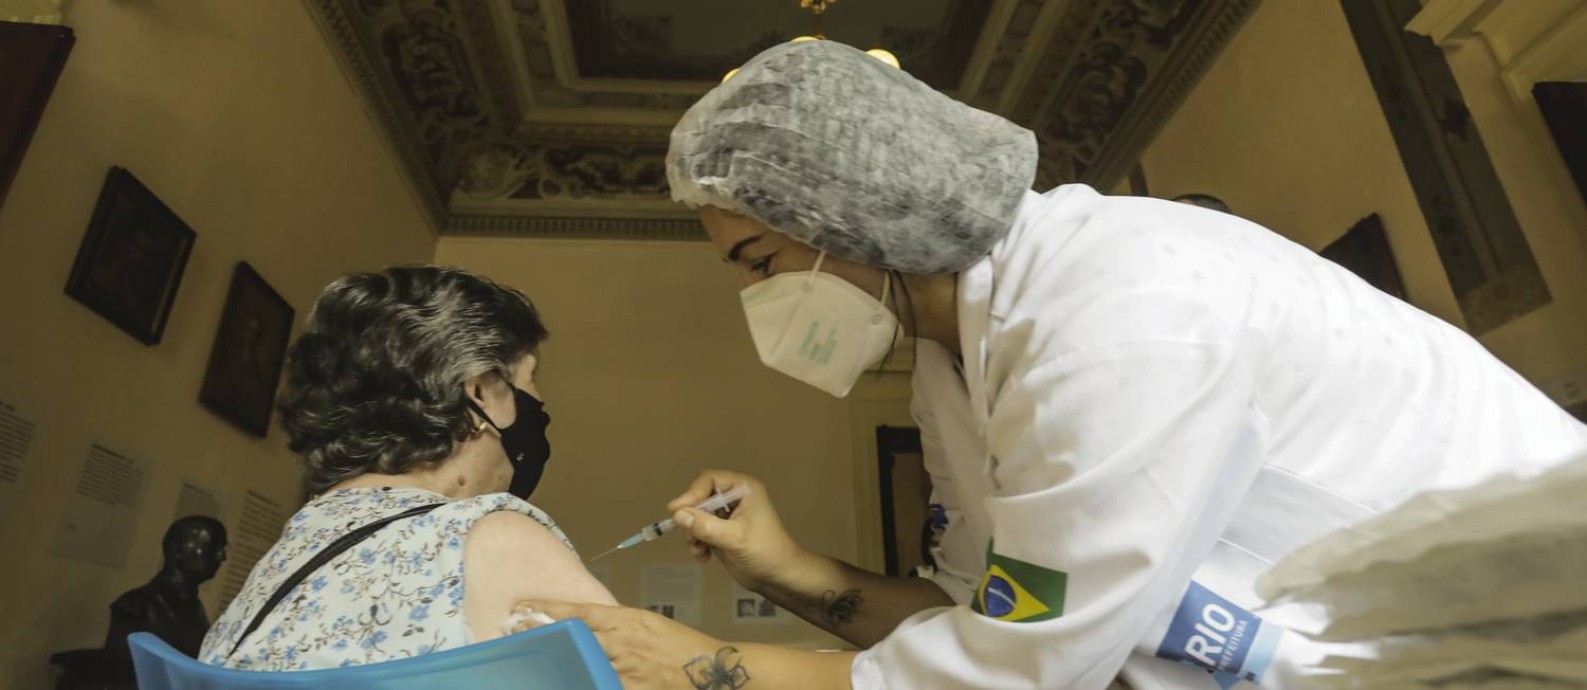 Vacinação contra a Covid-19 no Museu da República, no Palácio do Catete Foto: Gabriel de Paiva